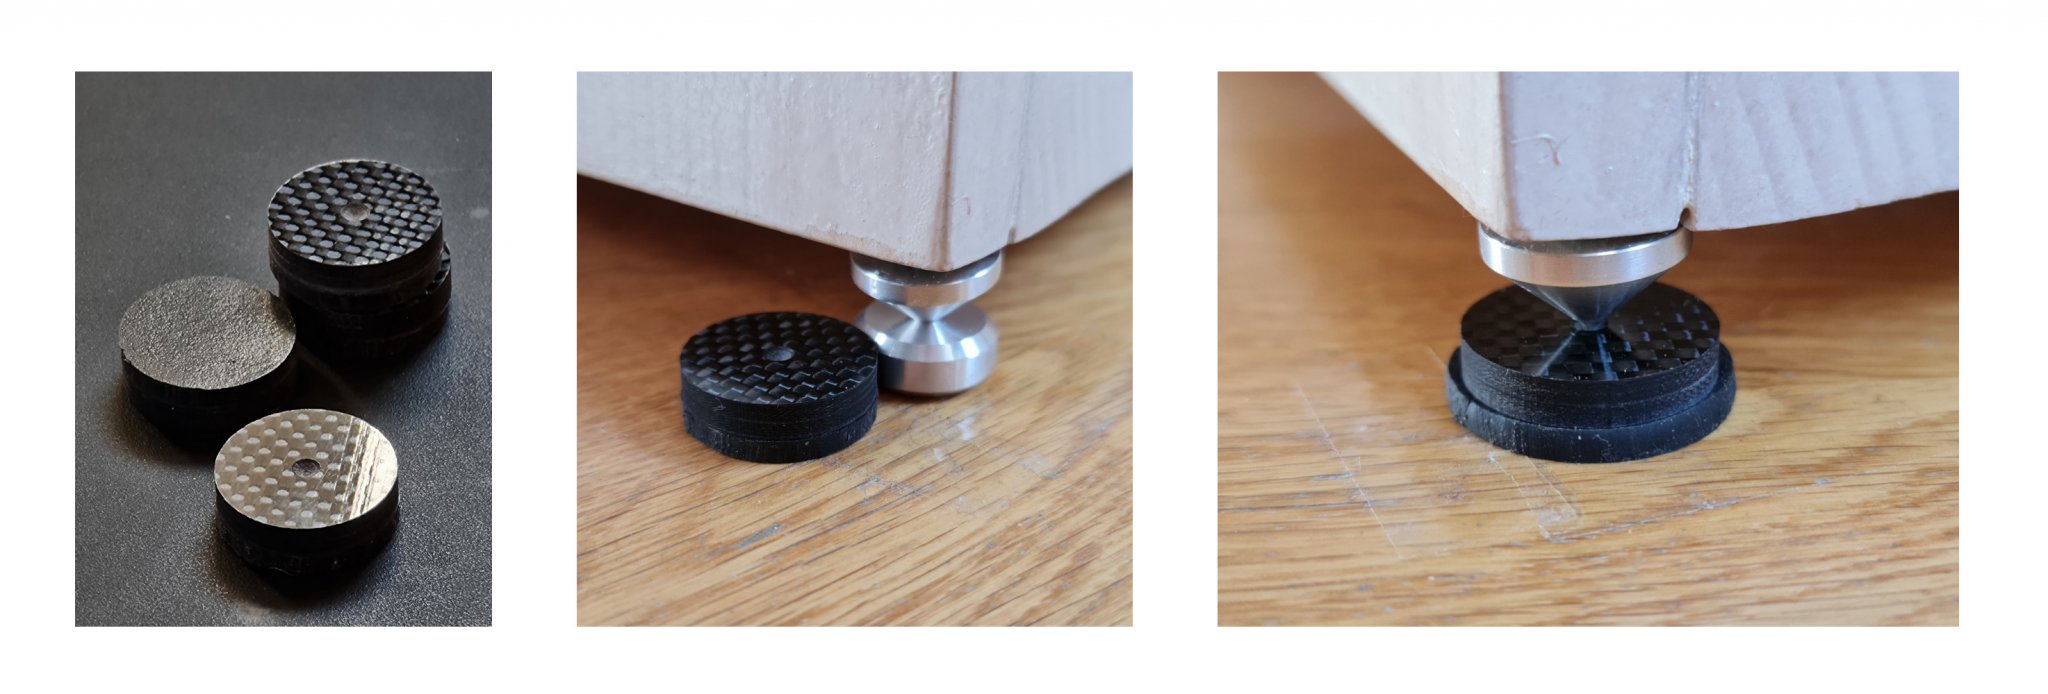 Carbon Fiber + Sorbothane disks speaker feet.jpg